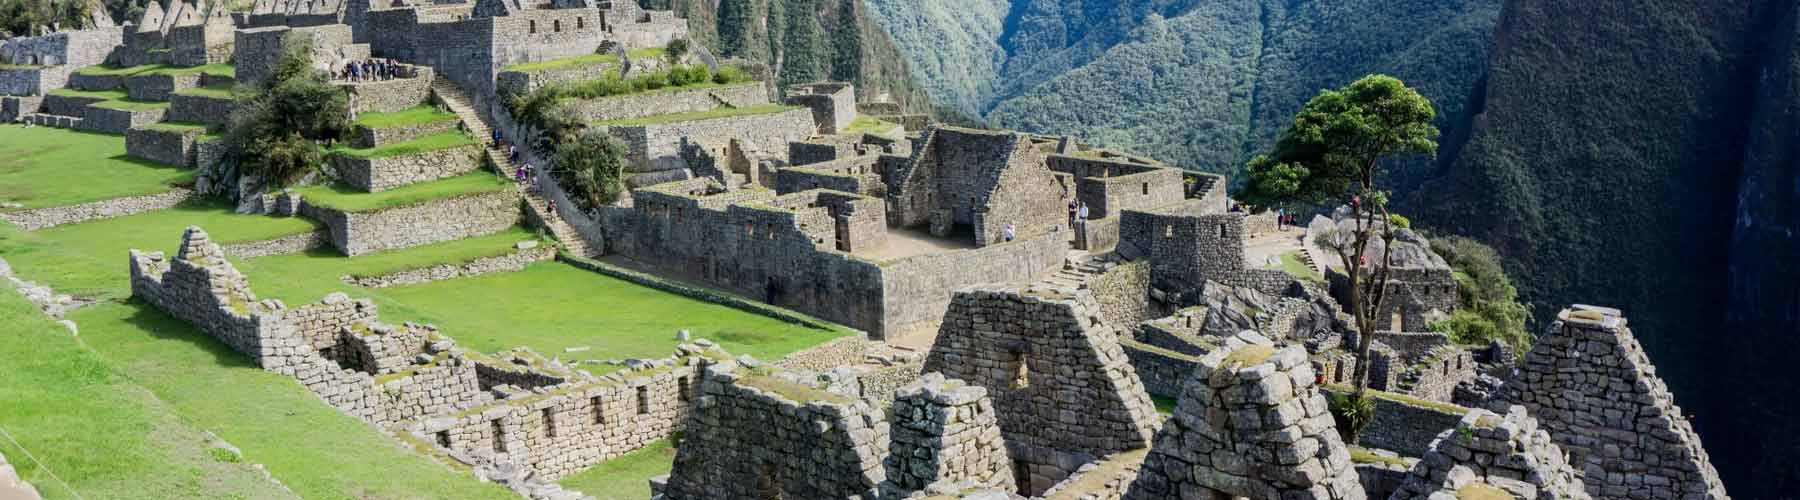 Travel Guide of Machu Picchu